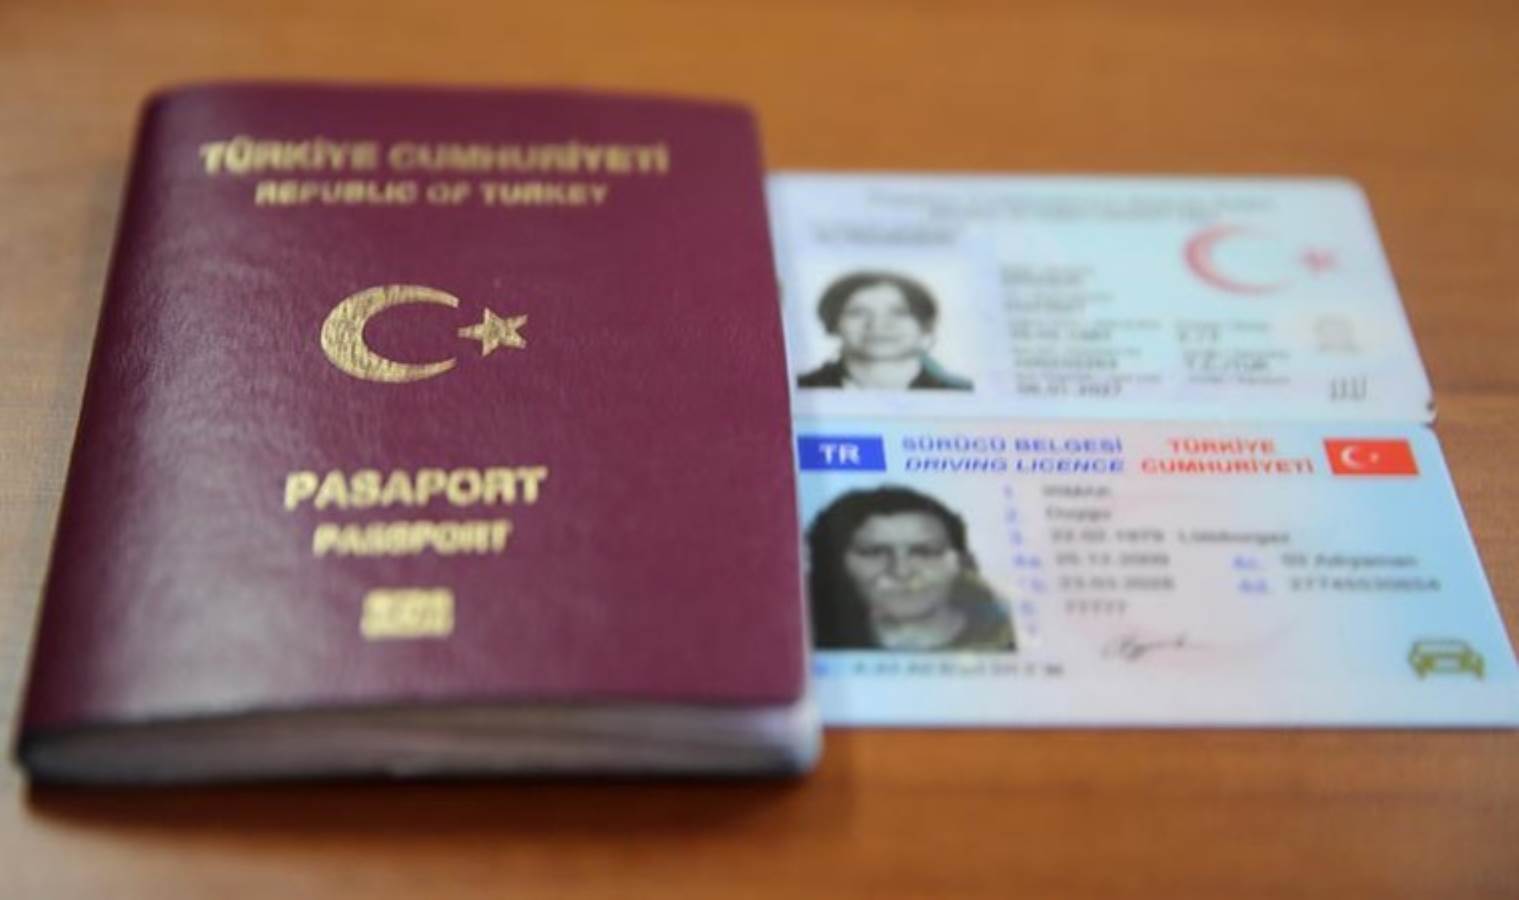 Oy kullanmaya giderken ne gerekli? Geçici kimlik belgesi ile oy kullanılır mı? - Son Dakika Türkiye Haberleri | Cumhuriyet